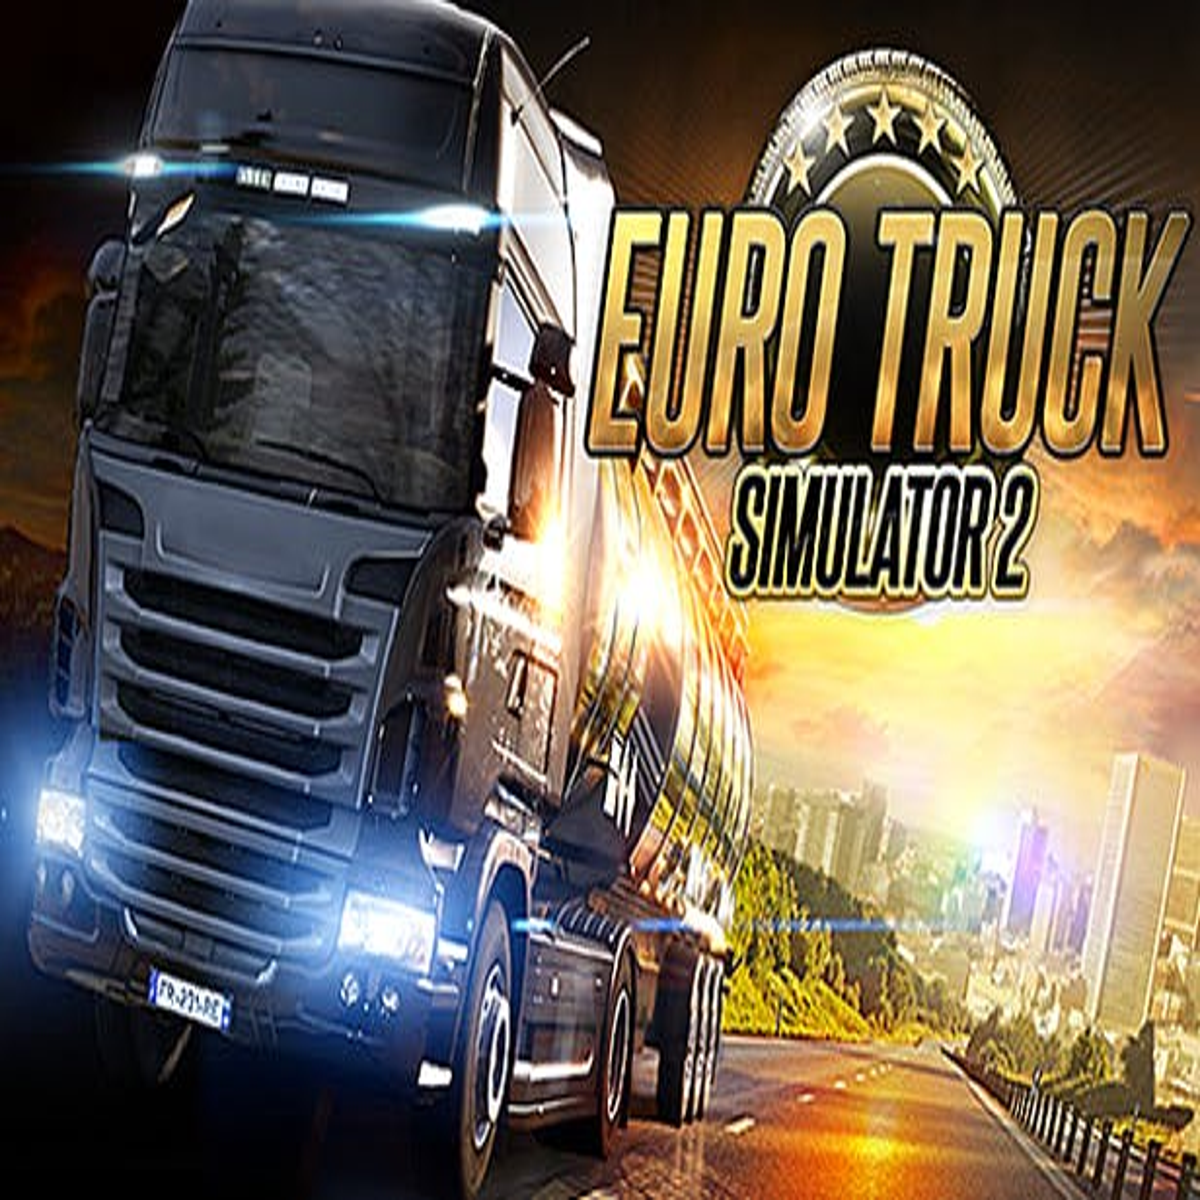 Stream Baixe agora o Grand Truck Simulator 2 apk mod e tenha